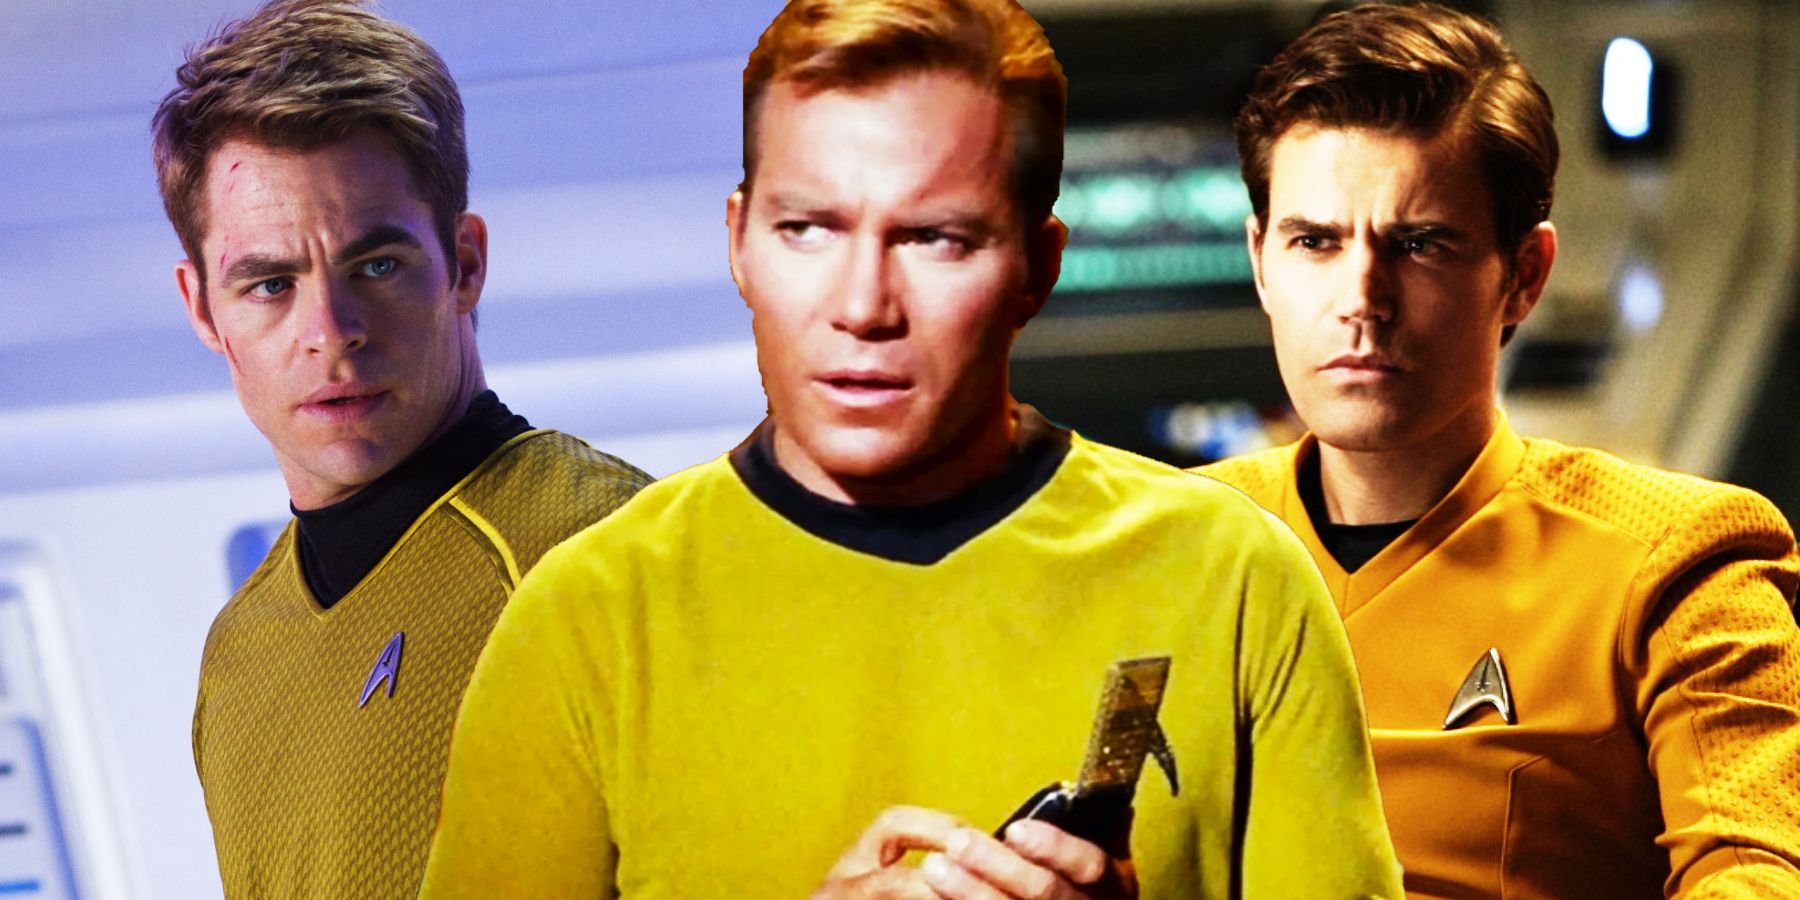 Chris Pine, William Shatner, and Paul Wesley as James Kirk